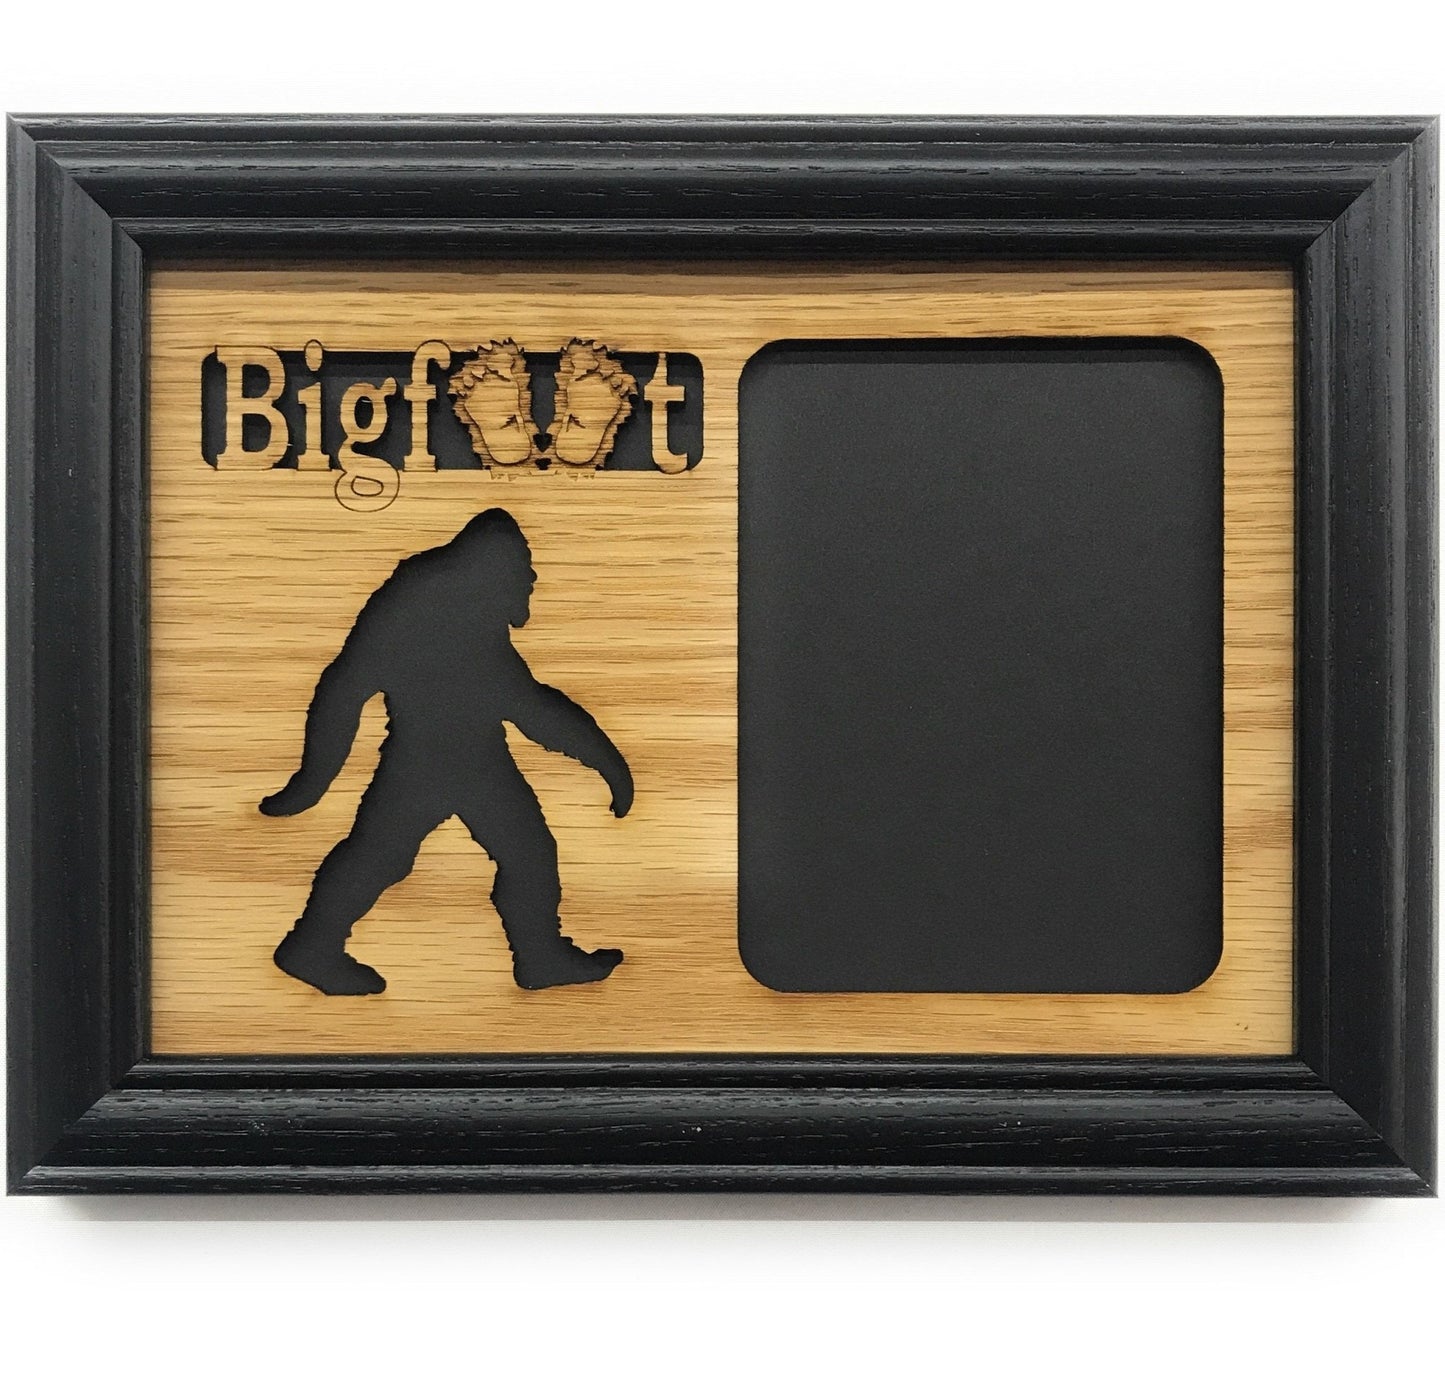 Bigfoot Picture Frame - Bigfoot Picture Frame - Legacy Images - Picture Frames - Legacy Images - Picture Frames